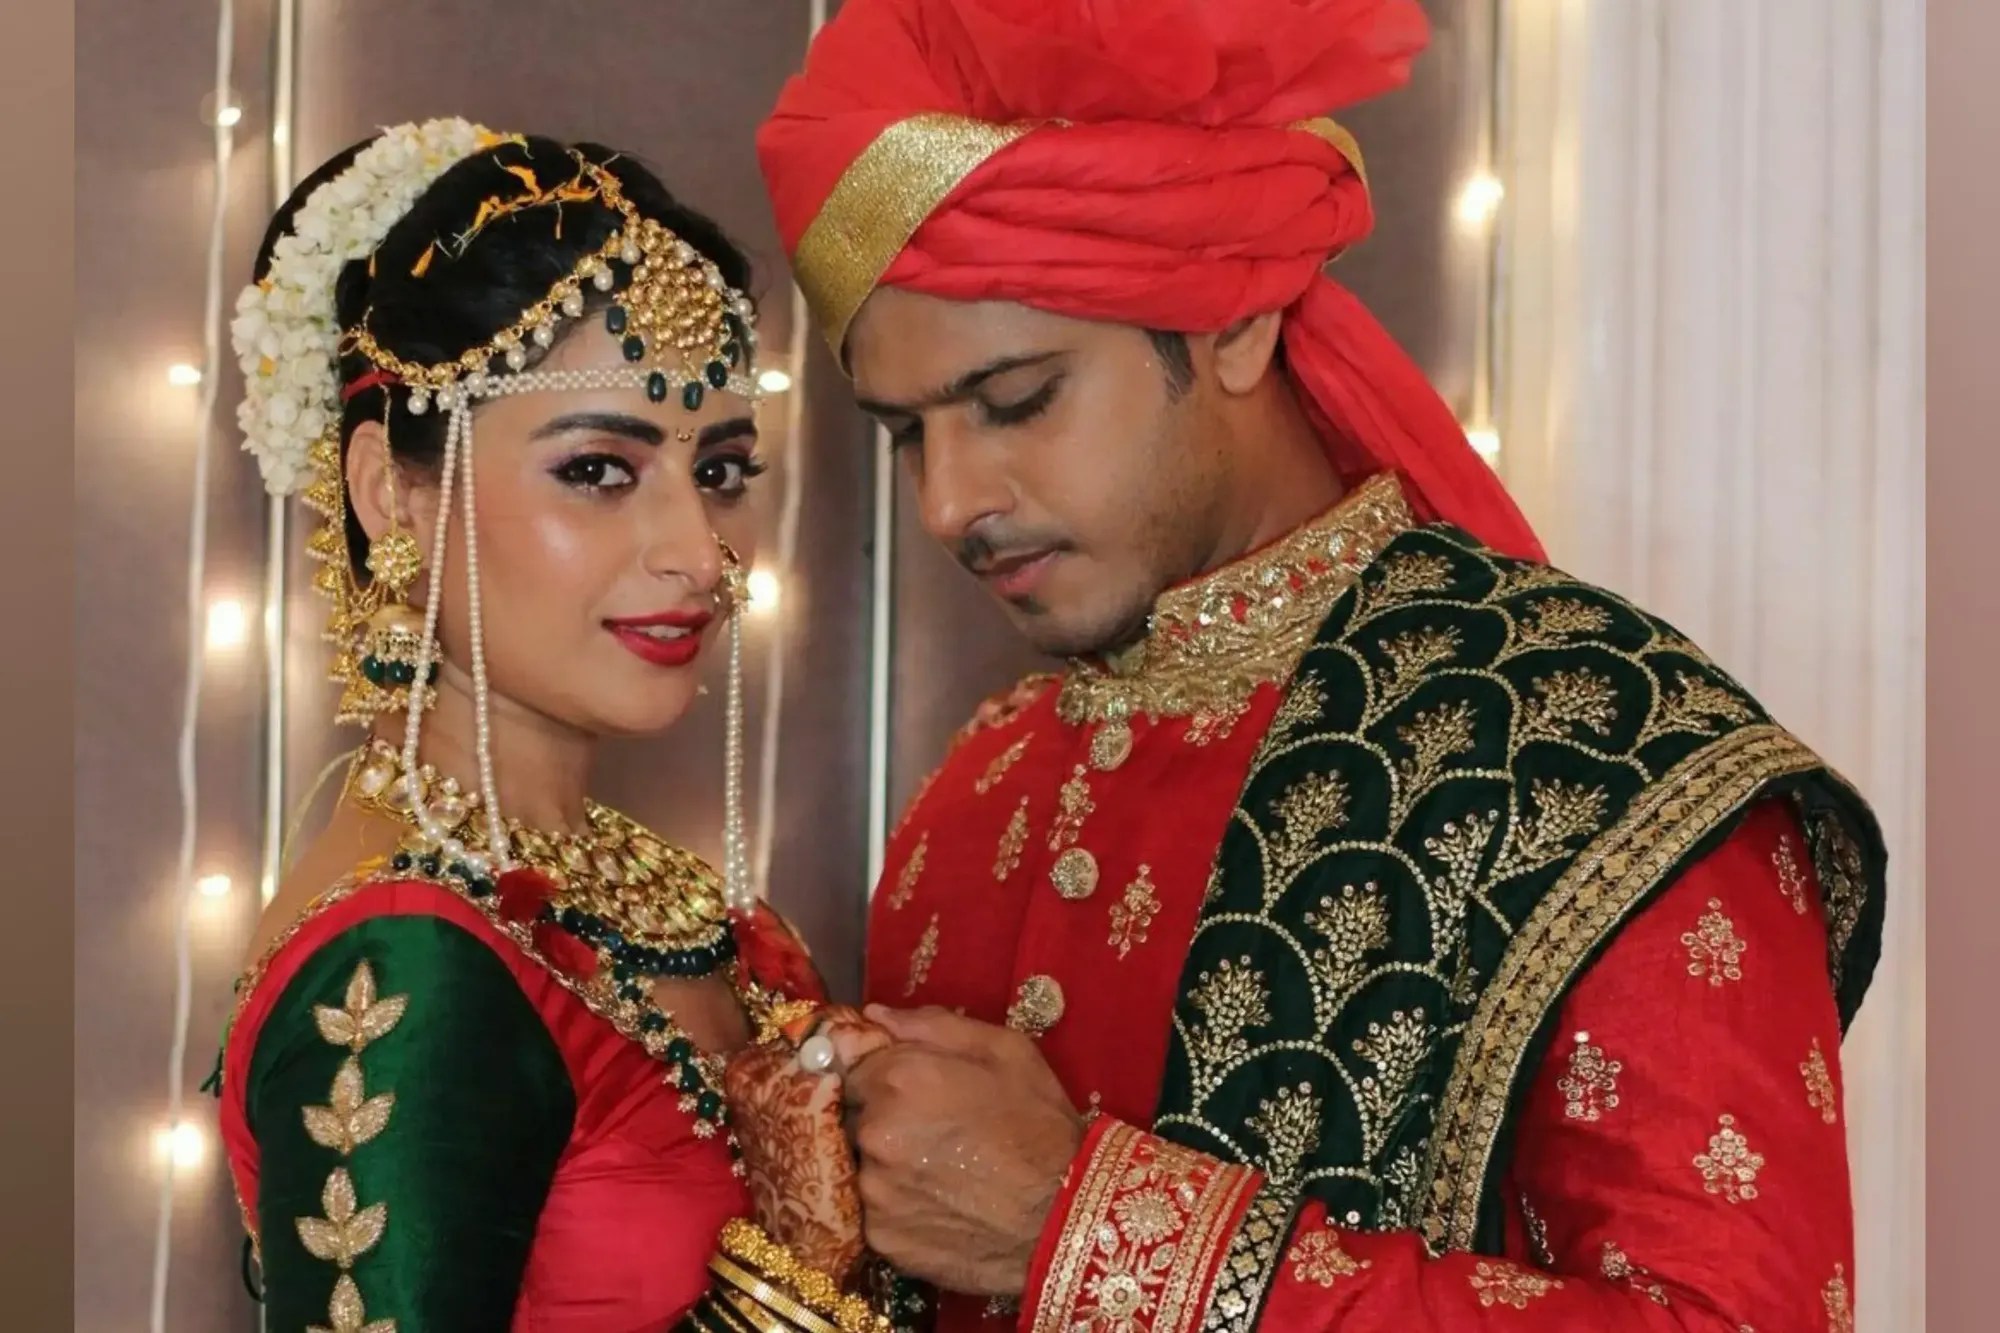 गुम है किसी के प्यार में फेम ऐश्वर्या शर्मा और नील भट्ट 30 नवंबर को बंधेंगे शादी के बंधन में